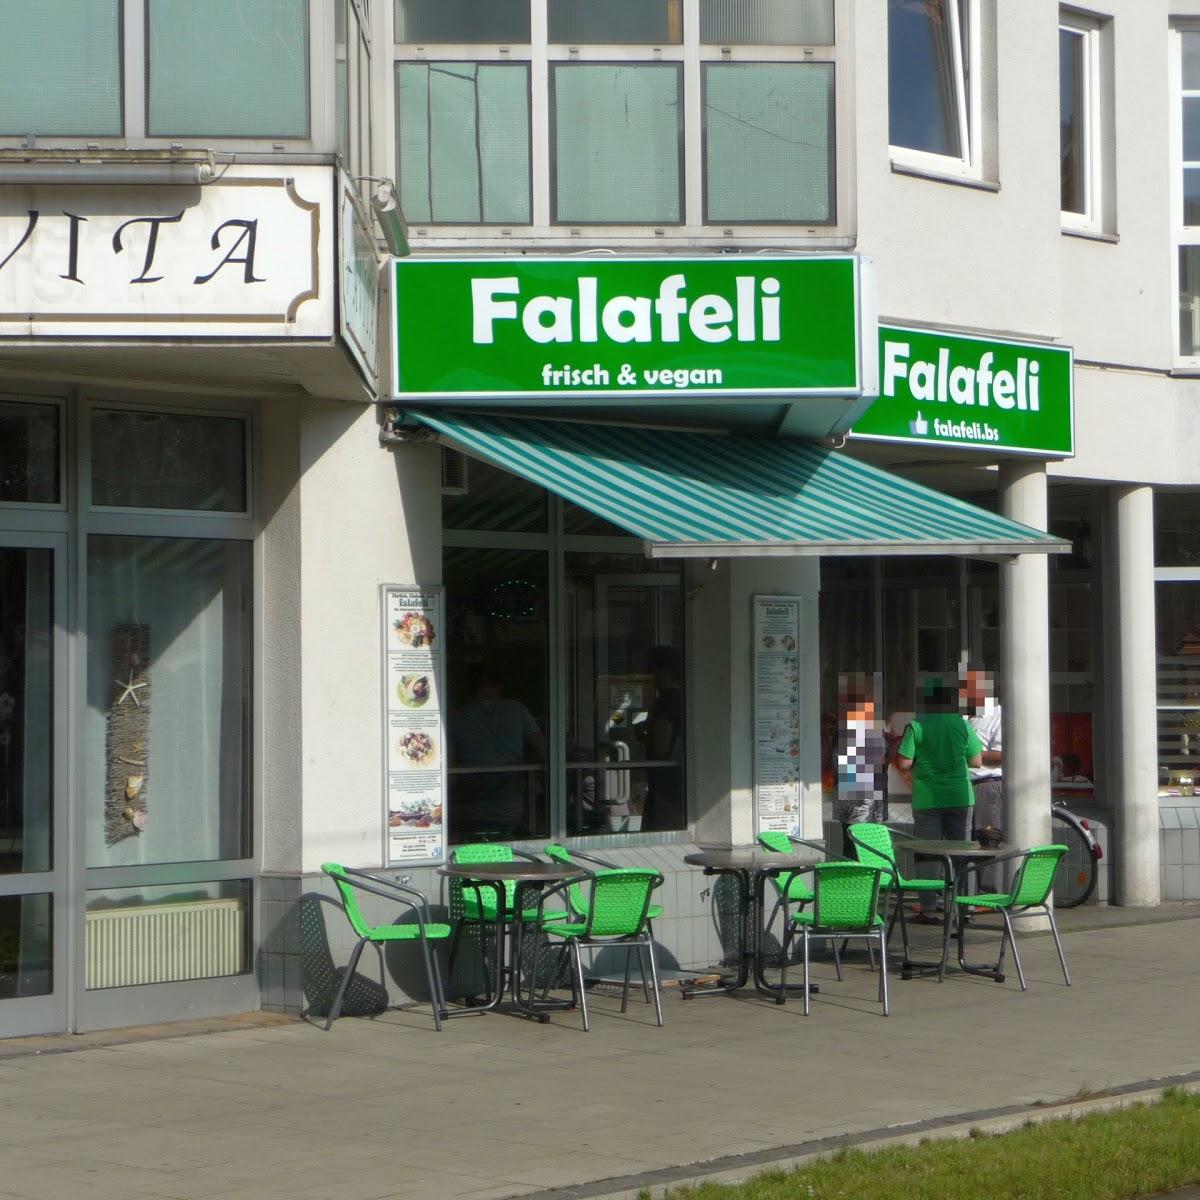 Restaurant "Falafeli" in Braunschweig